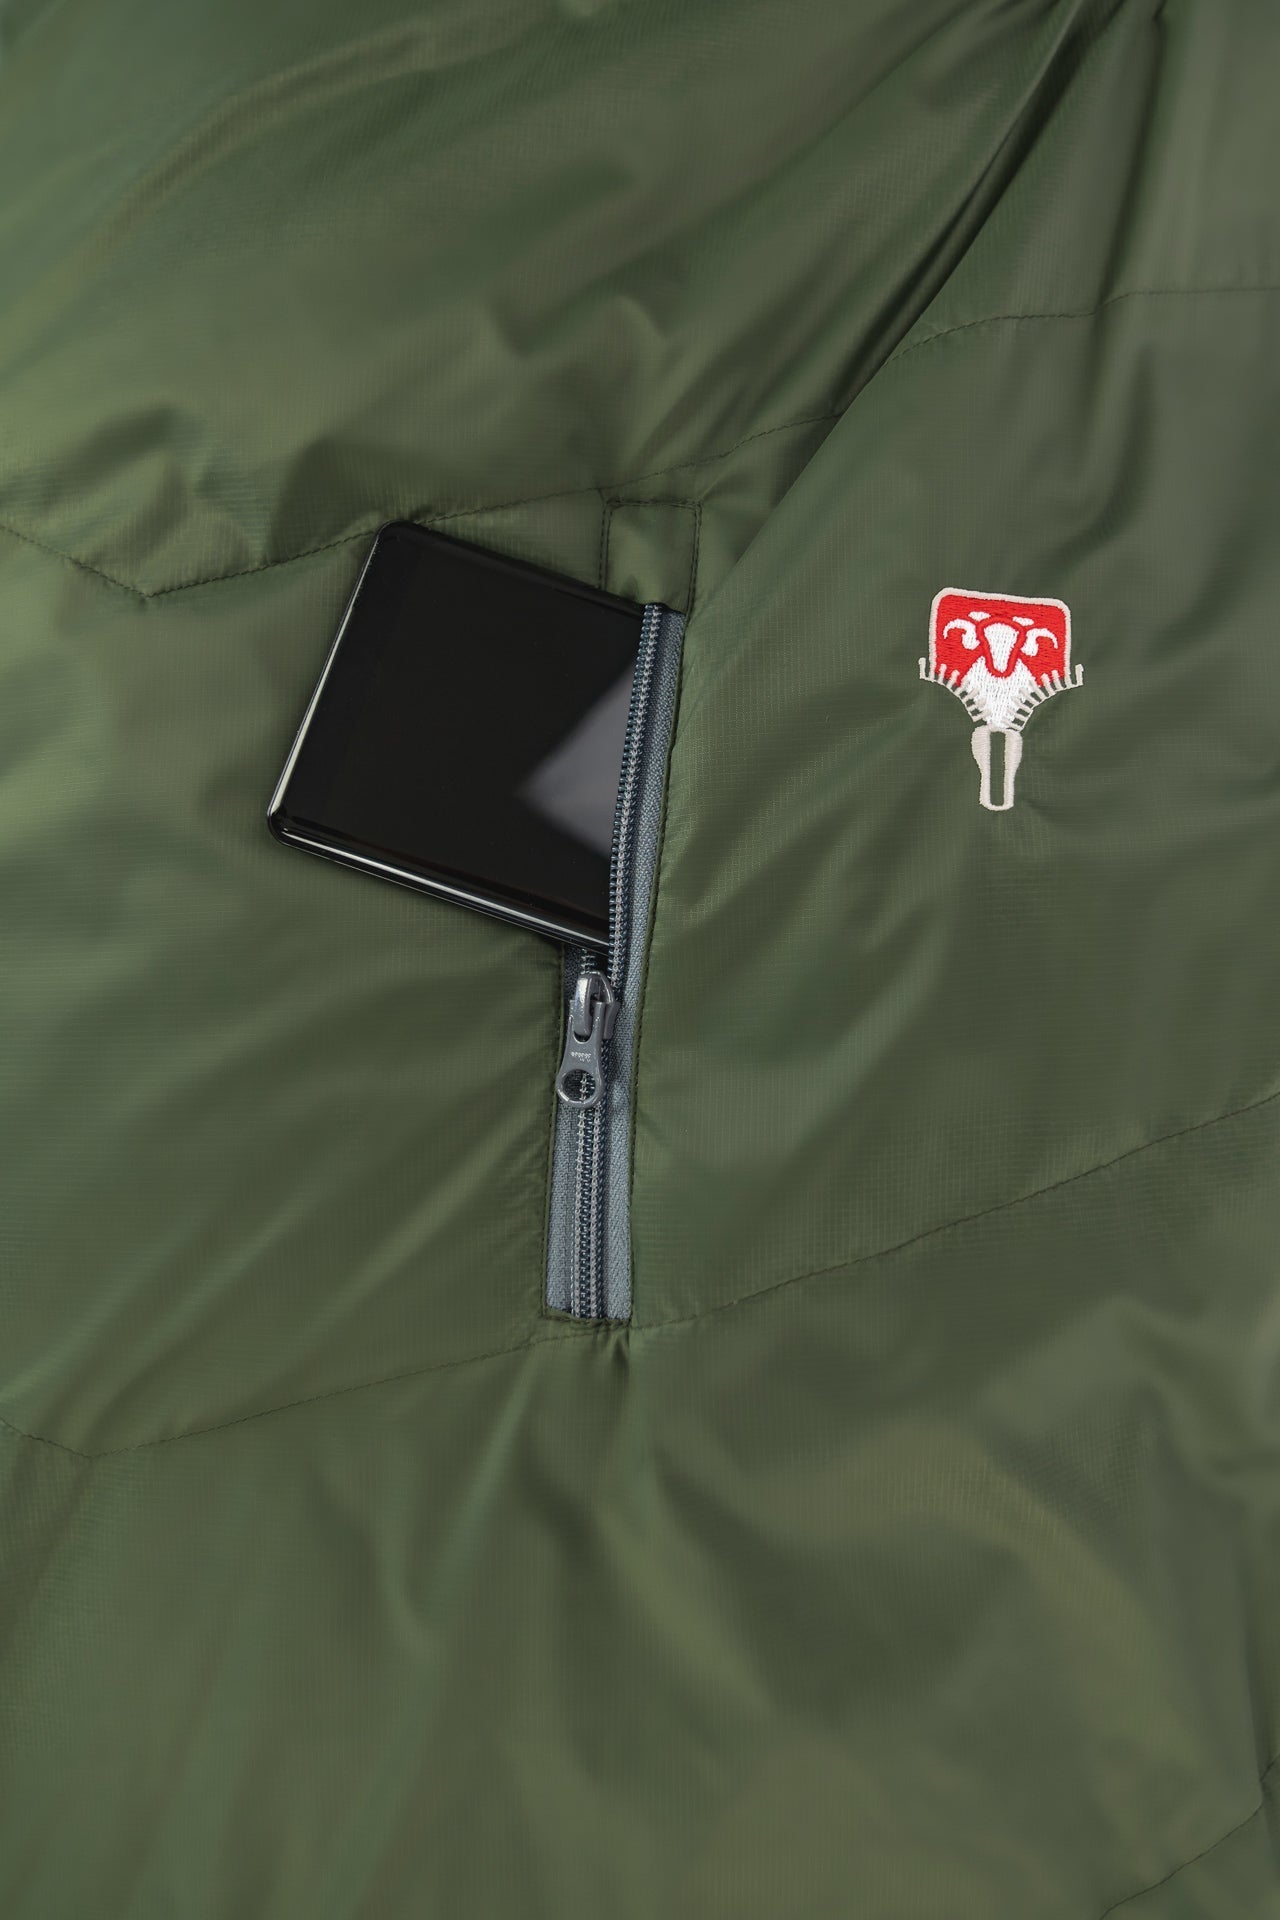 Grüezi bag Outdoorschlafsack Biopod Wolle Survival - Außentasche